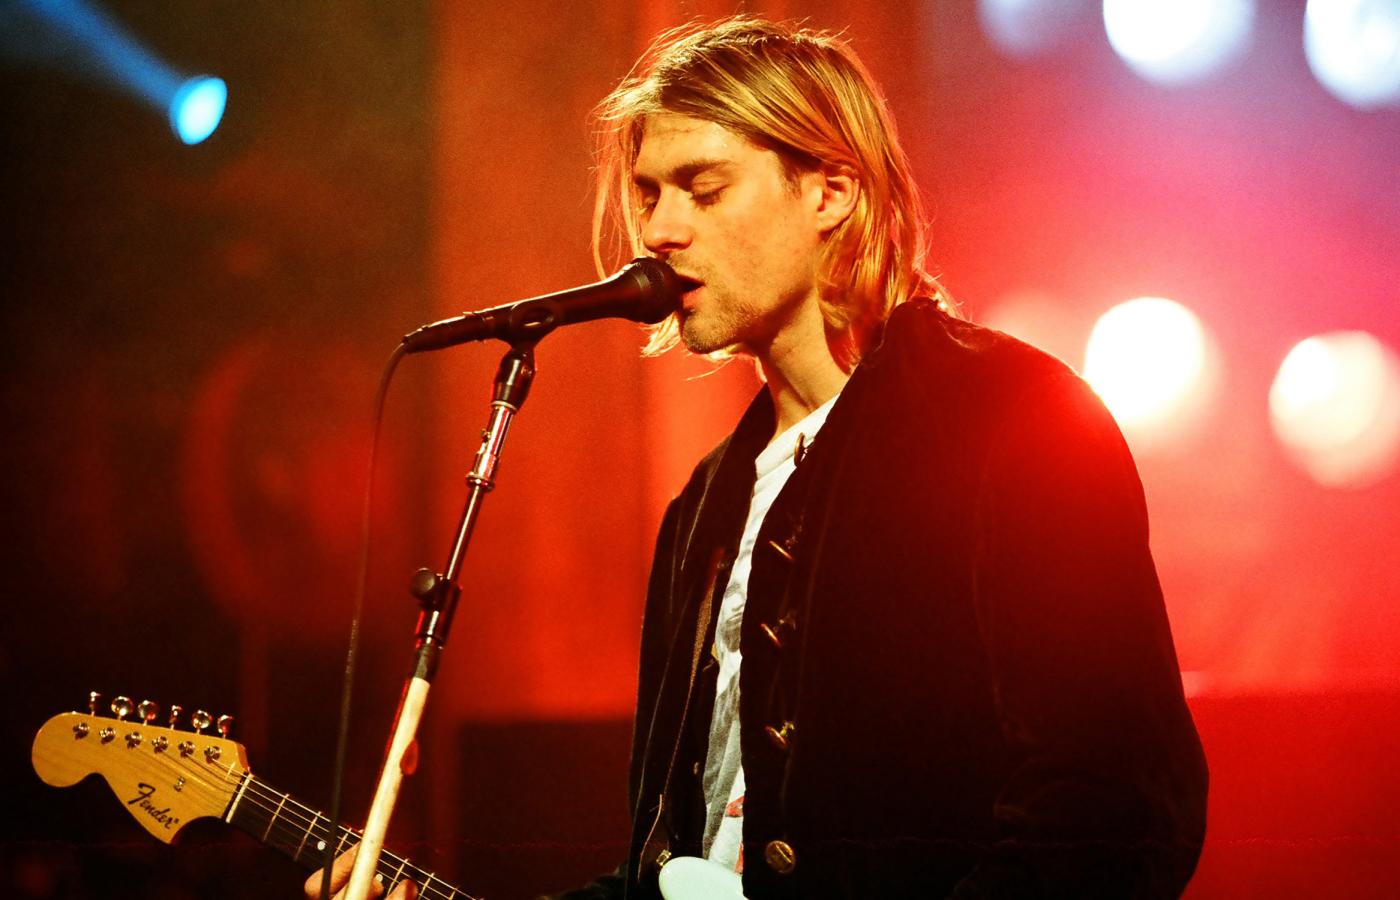 Zespół Nirvana, a za nim cały gatunek grunge, zawędrował szturmem na listy przebojów. Na zdj. wokalista Nirvany, Kurt Cobain